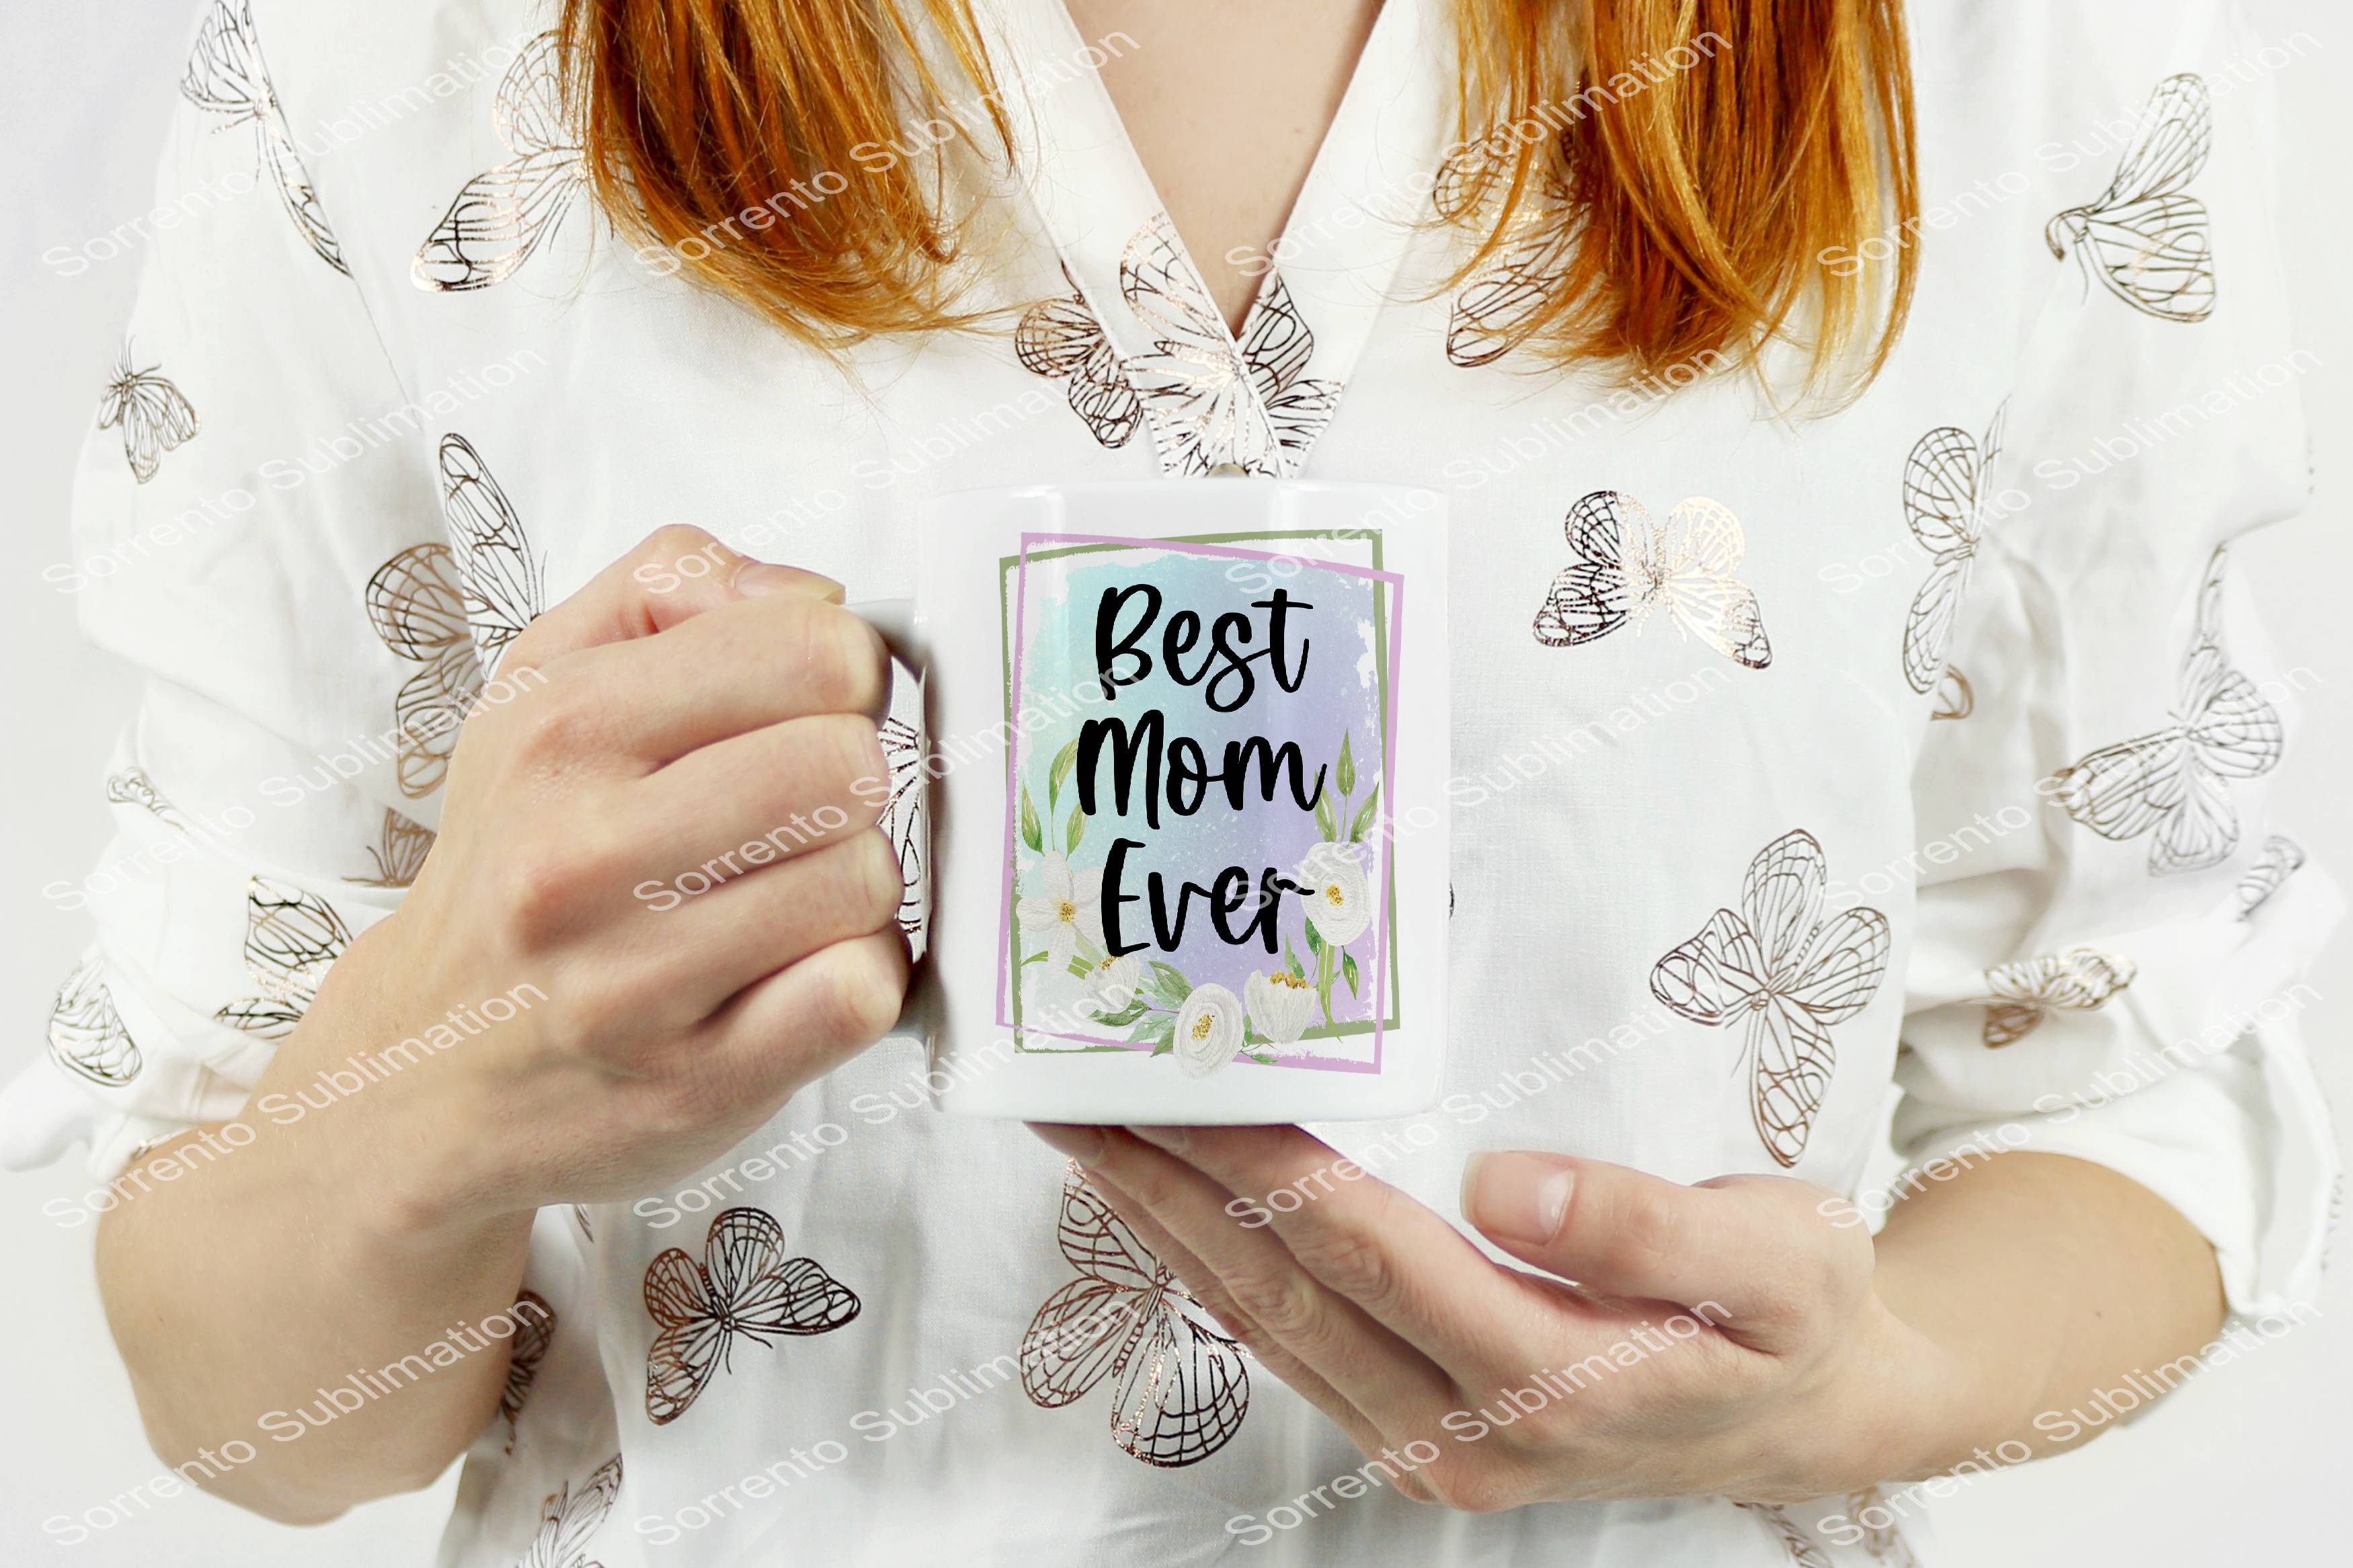 Best Mom Ever 12oz. Mug Sublimation Mug. Hot or Cold. White Glossy Mug.